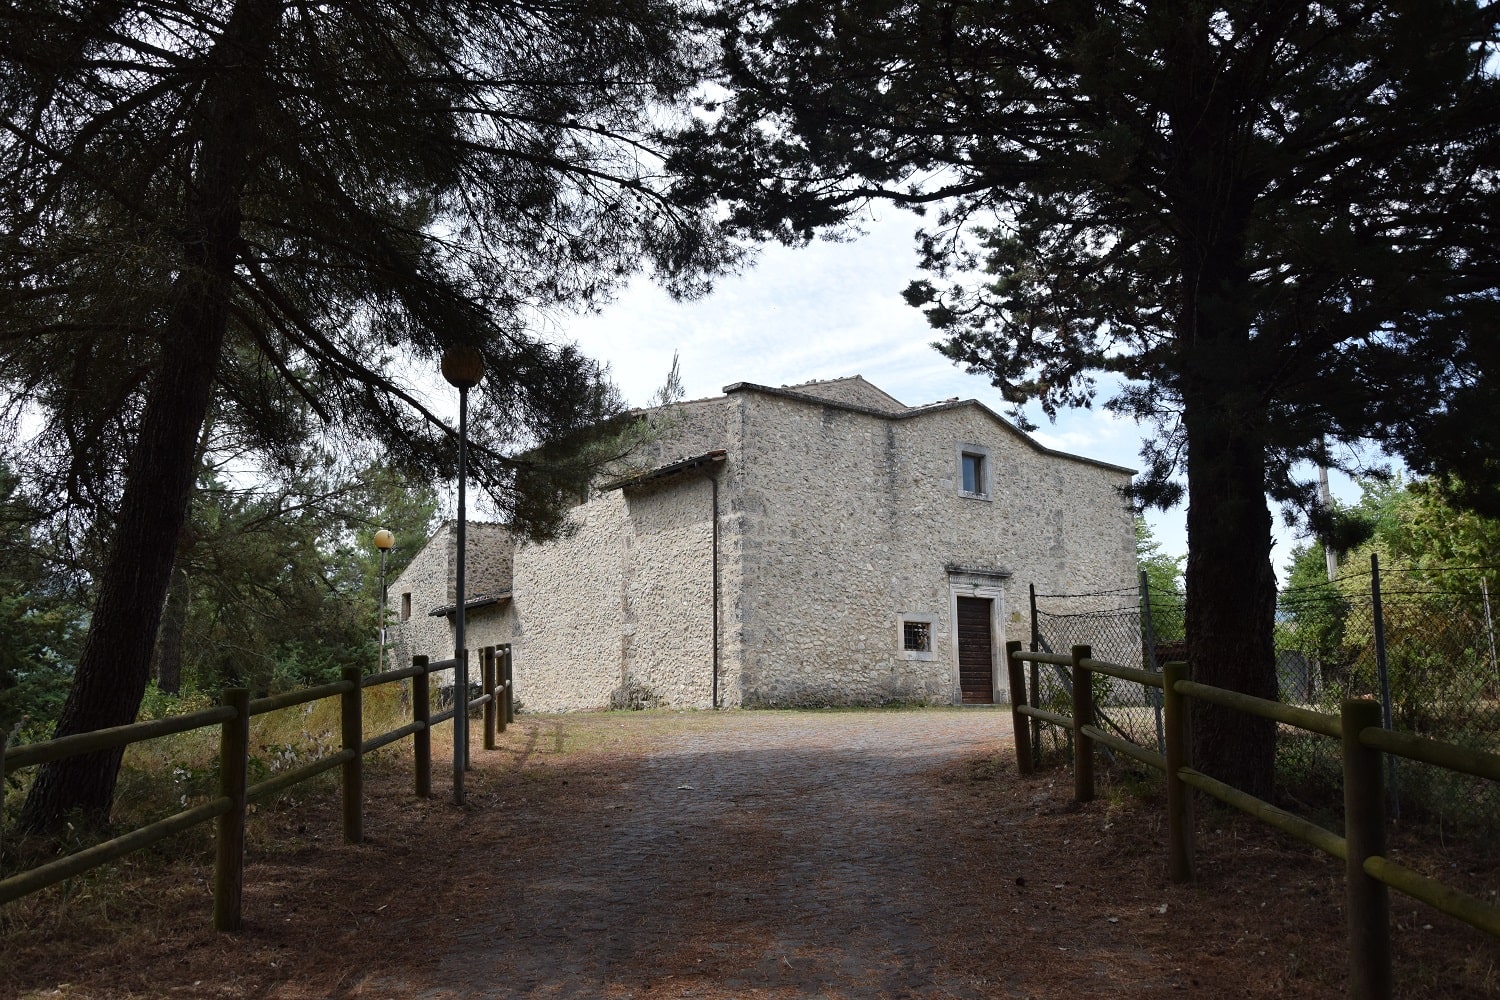 Molina-Castelvecchio Subequo - Molina Aterno, Chiesa di Santa Maria del colle